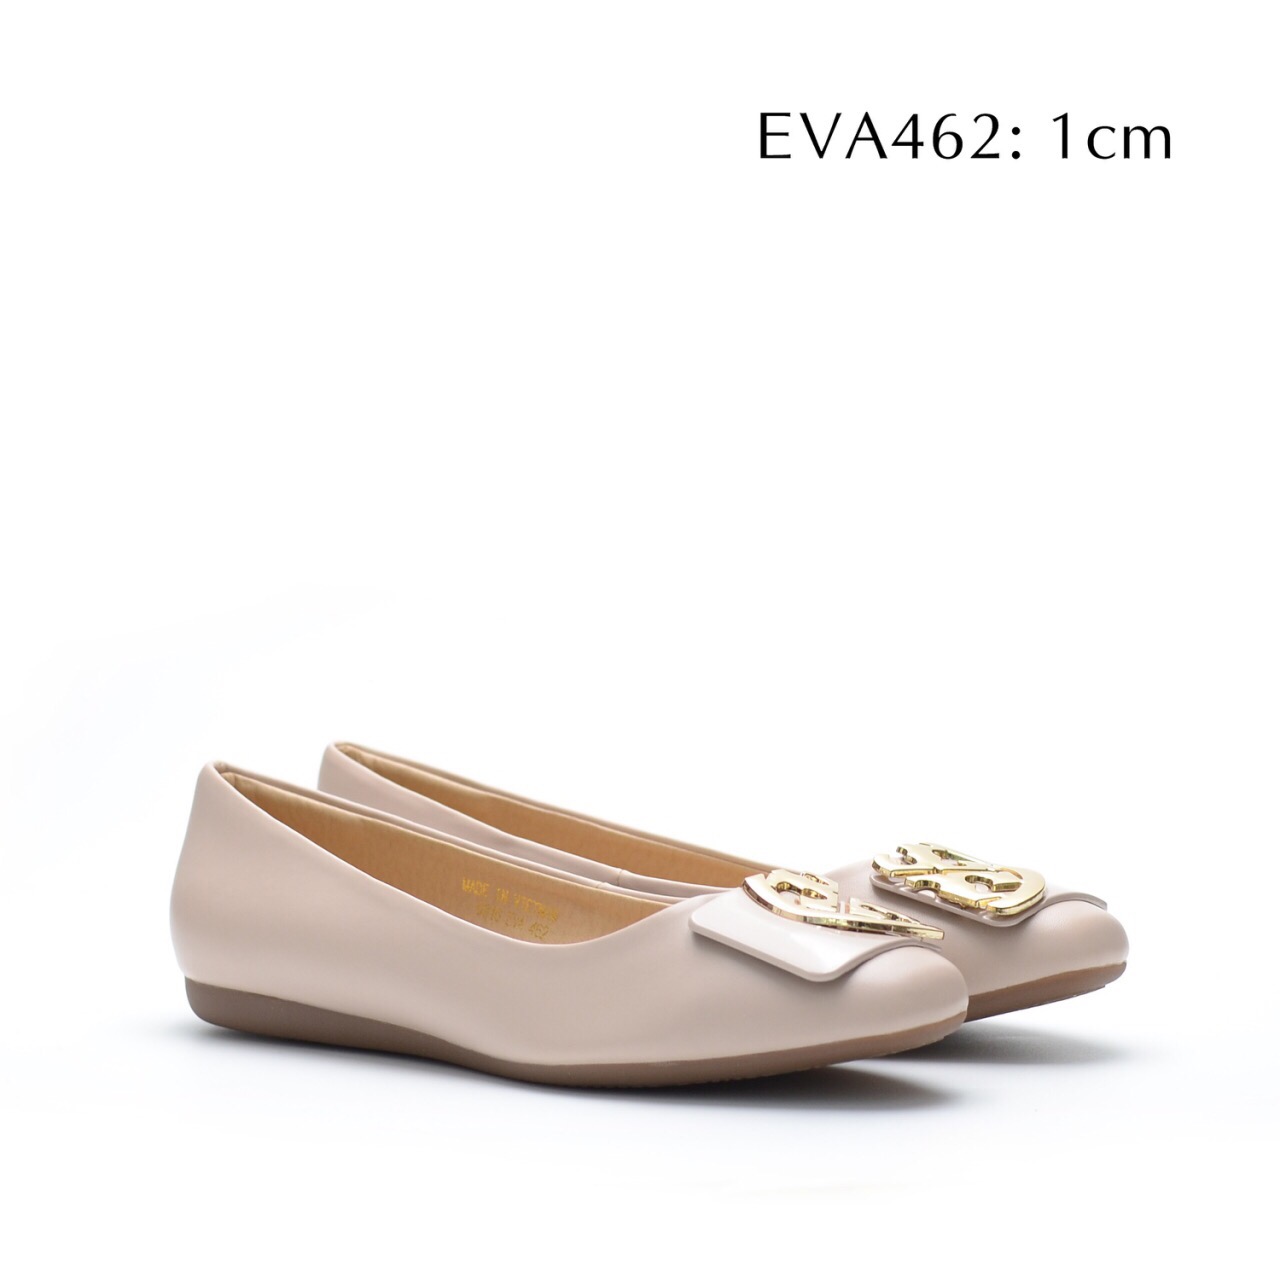 Giày bệt nữ xinh xắn EVA462 thiết kế nơ phối kim loại nổi bật